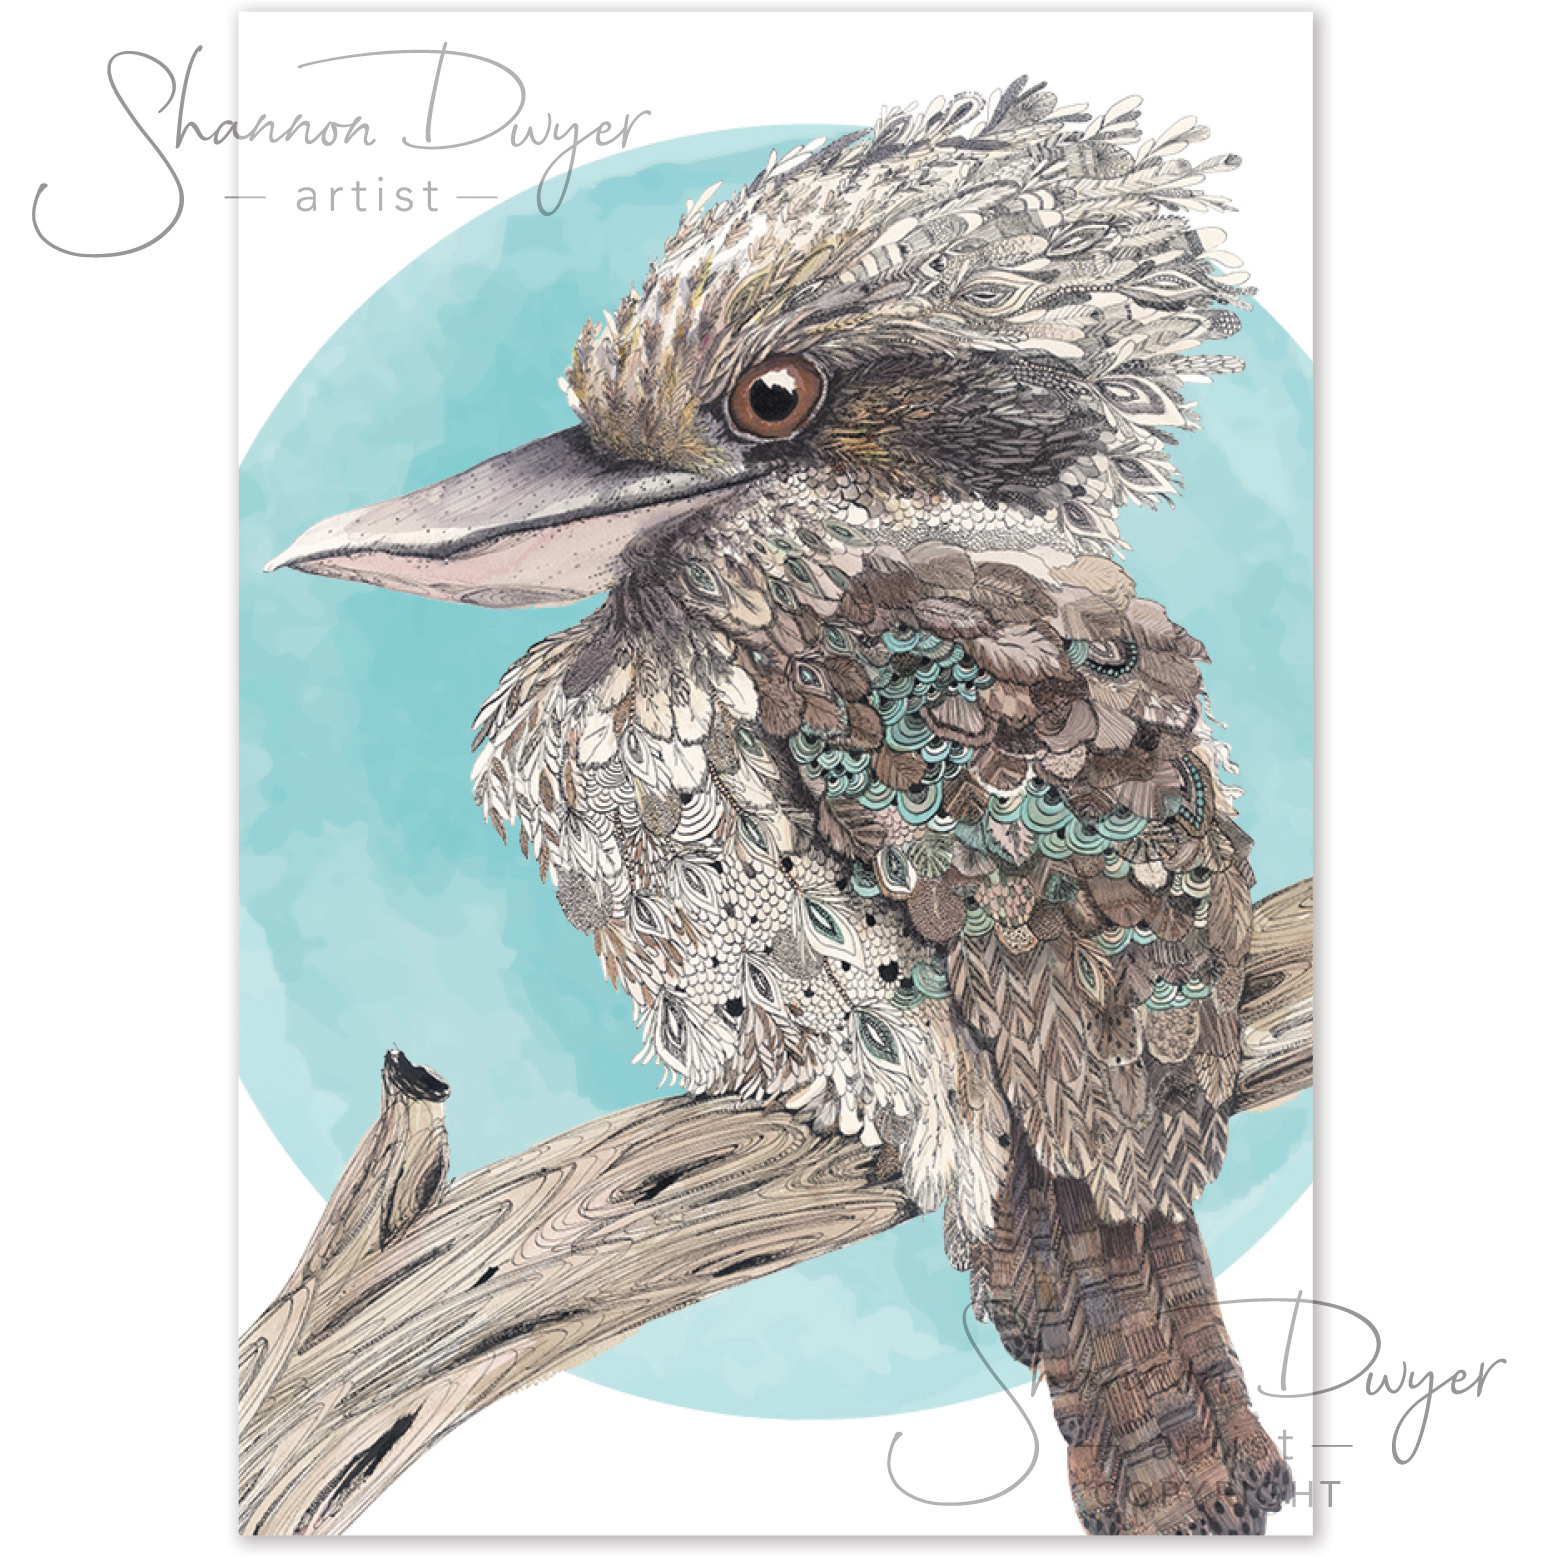 'Eye on You' POP Greeting Card artwork of a Kookaburra by Shannon Dwyer Artist